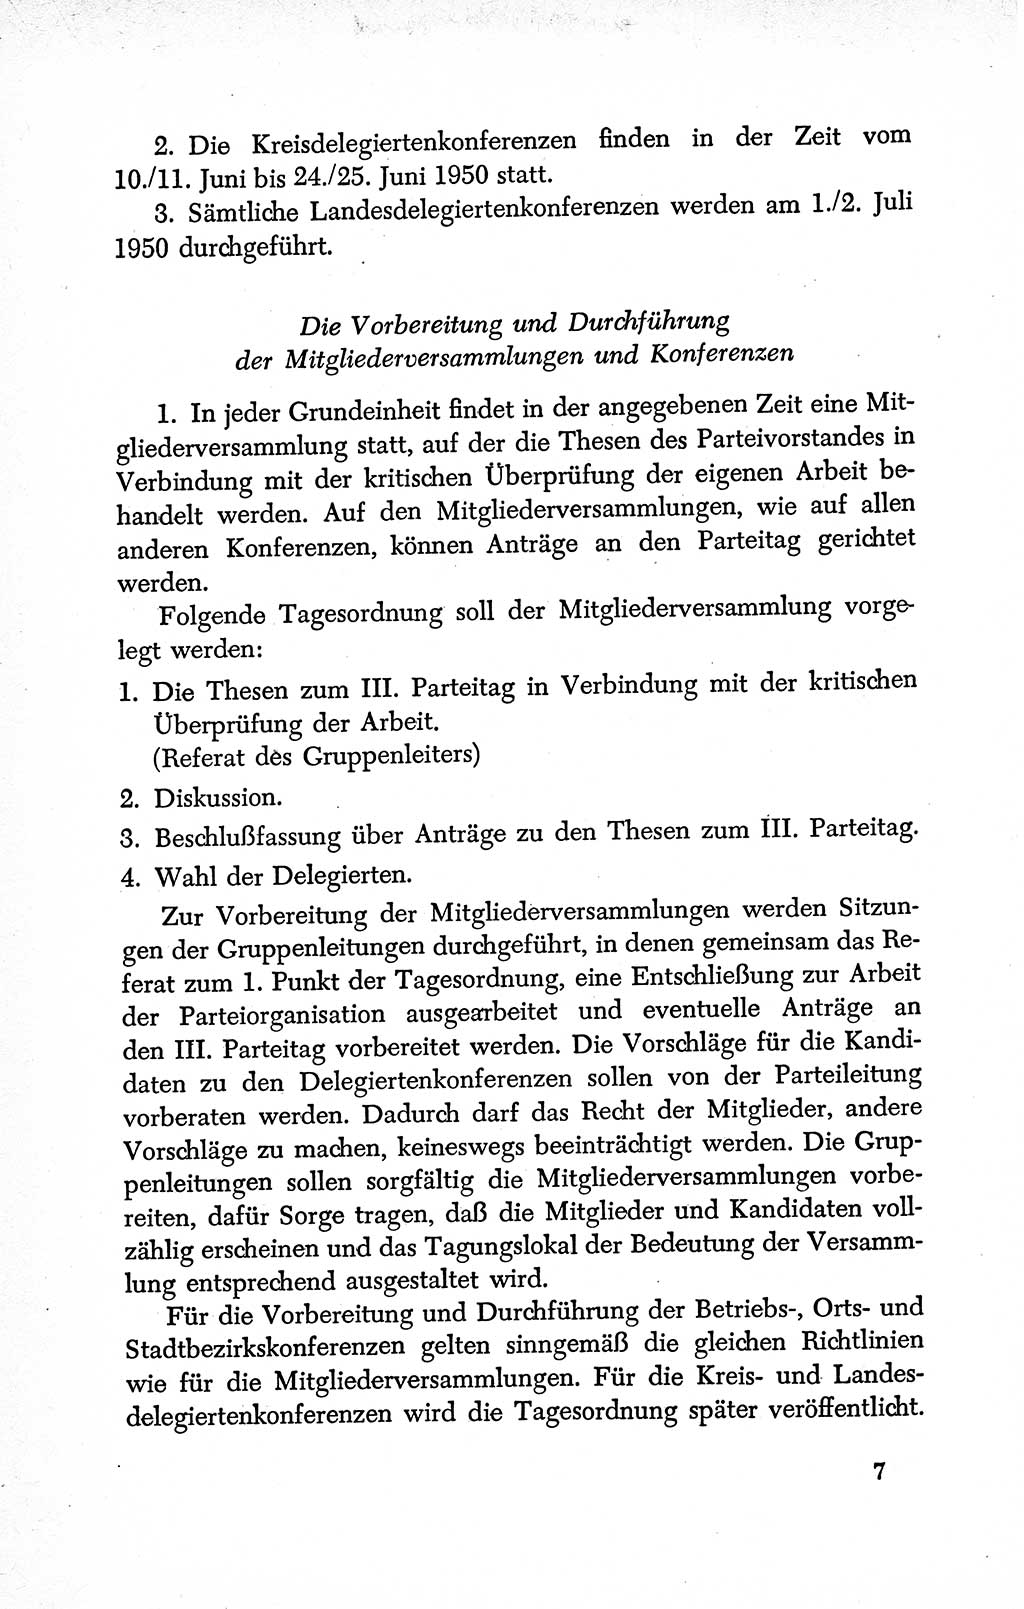 Dokumente der Sozialistischen Einheitspartei Deutschlands (SED) [Deutsche Demokratische Republik (DDR)] 1950-1952, Seite 7 (Dok. SED DDR 1950-1952, S. 7)